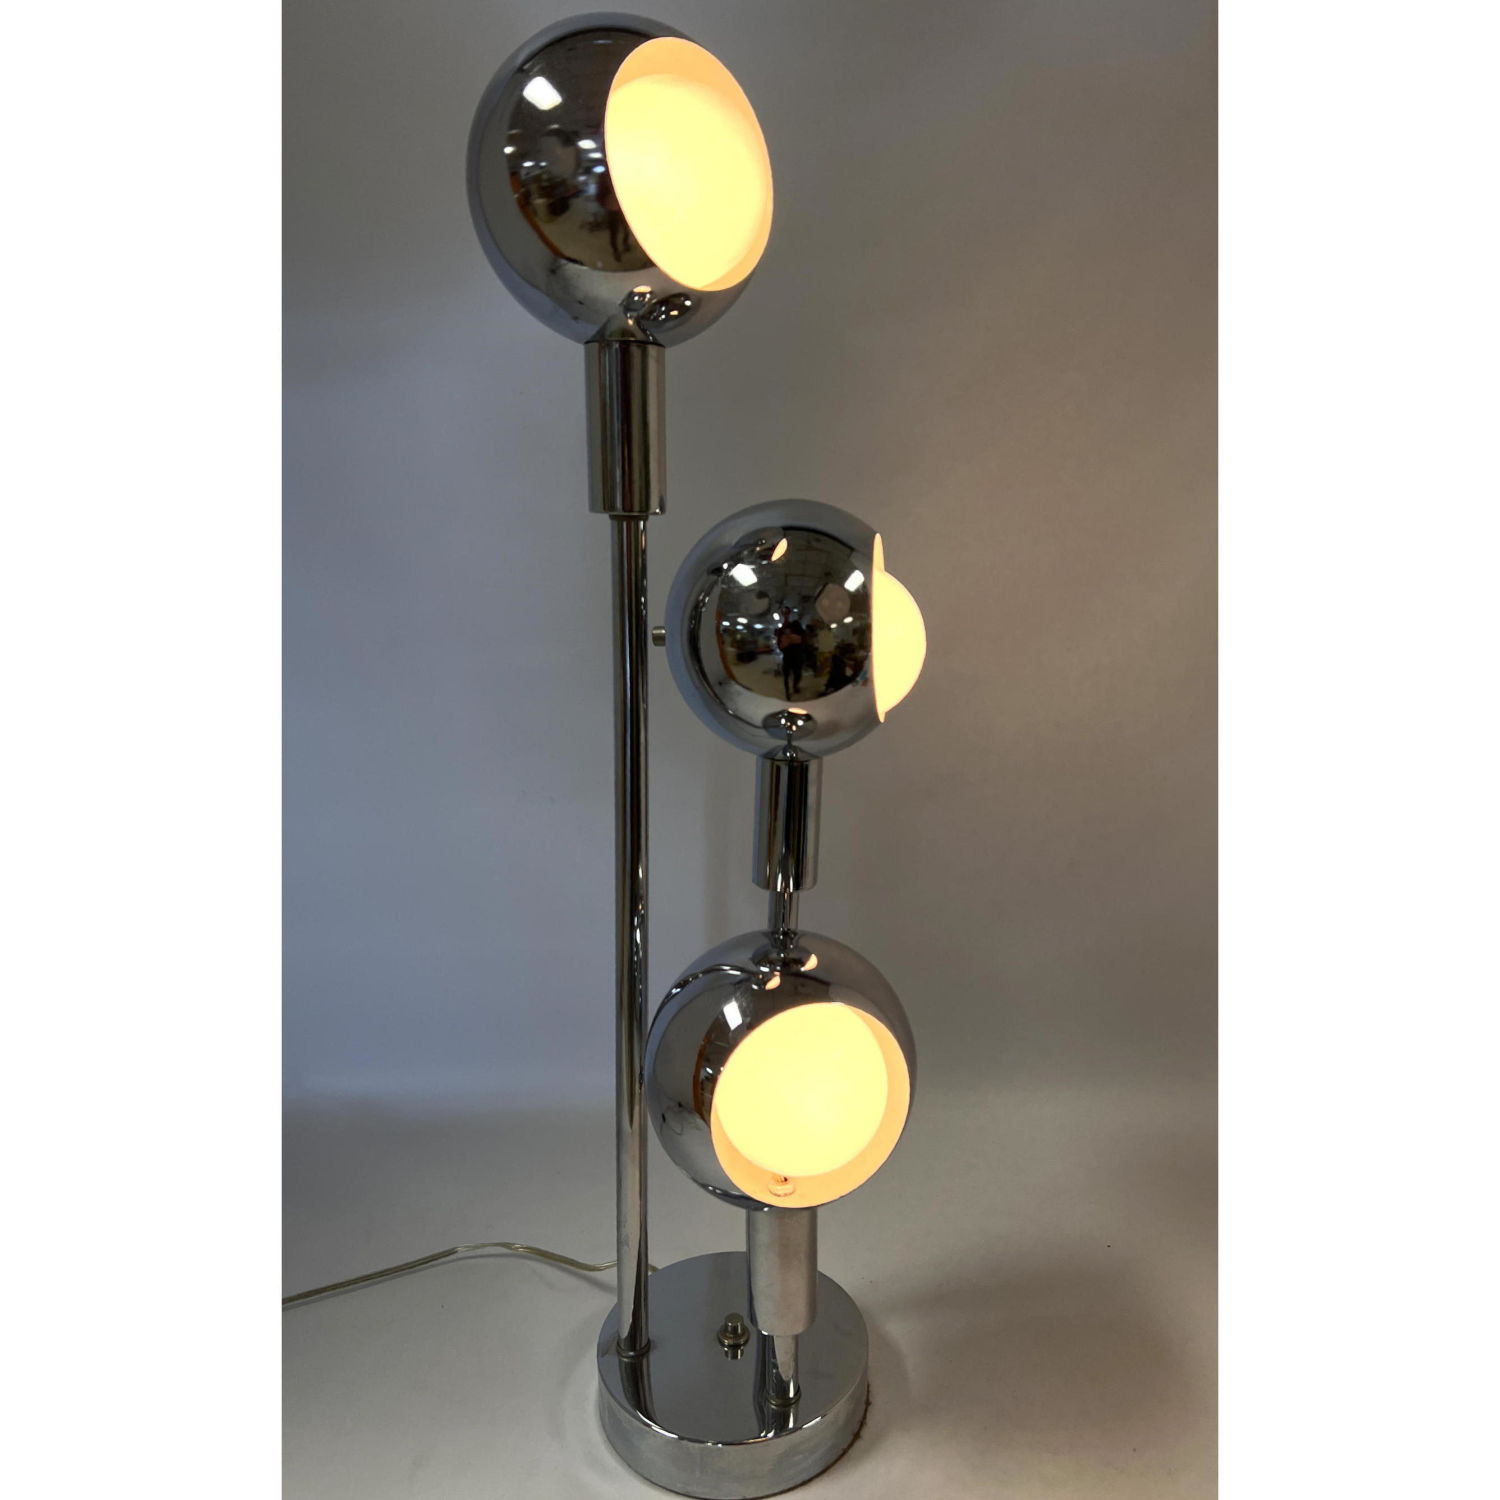 70's Chrome Ball Modernist Lamp.